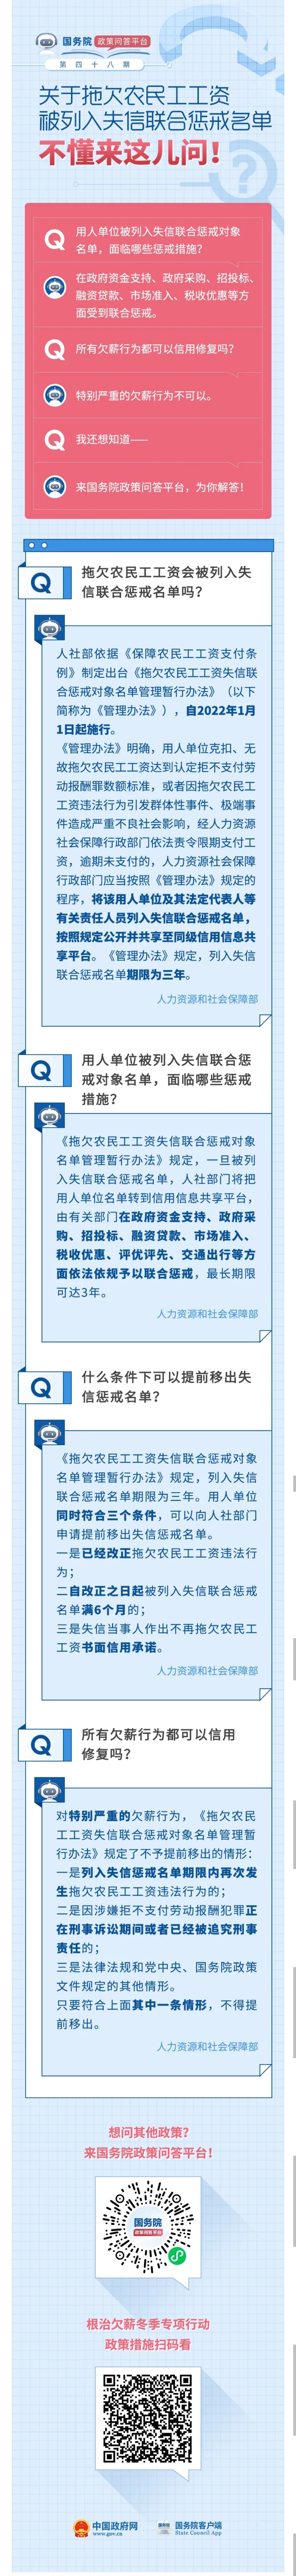 天津2月1日新增12例阳性感染者 - Peraplay Sports - 百度评论 百度热点快讯